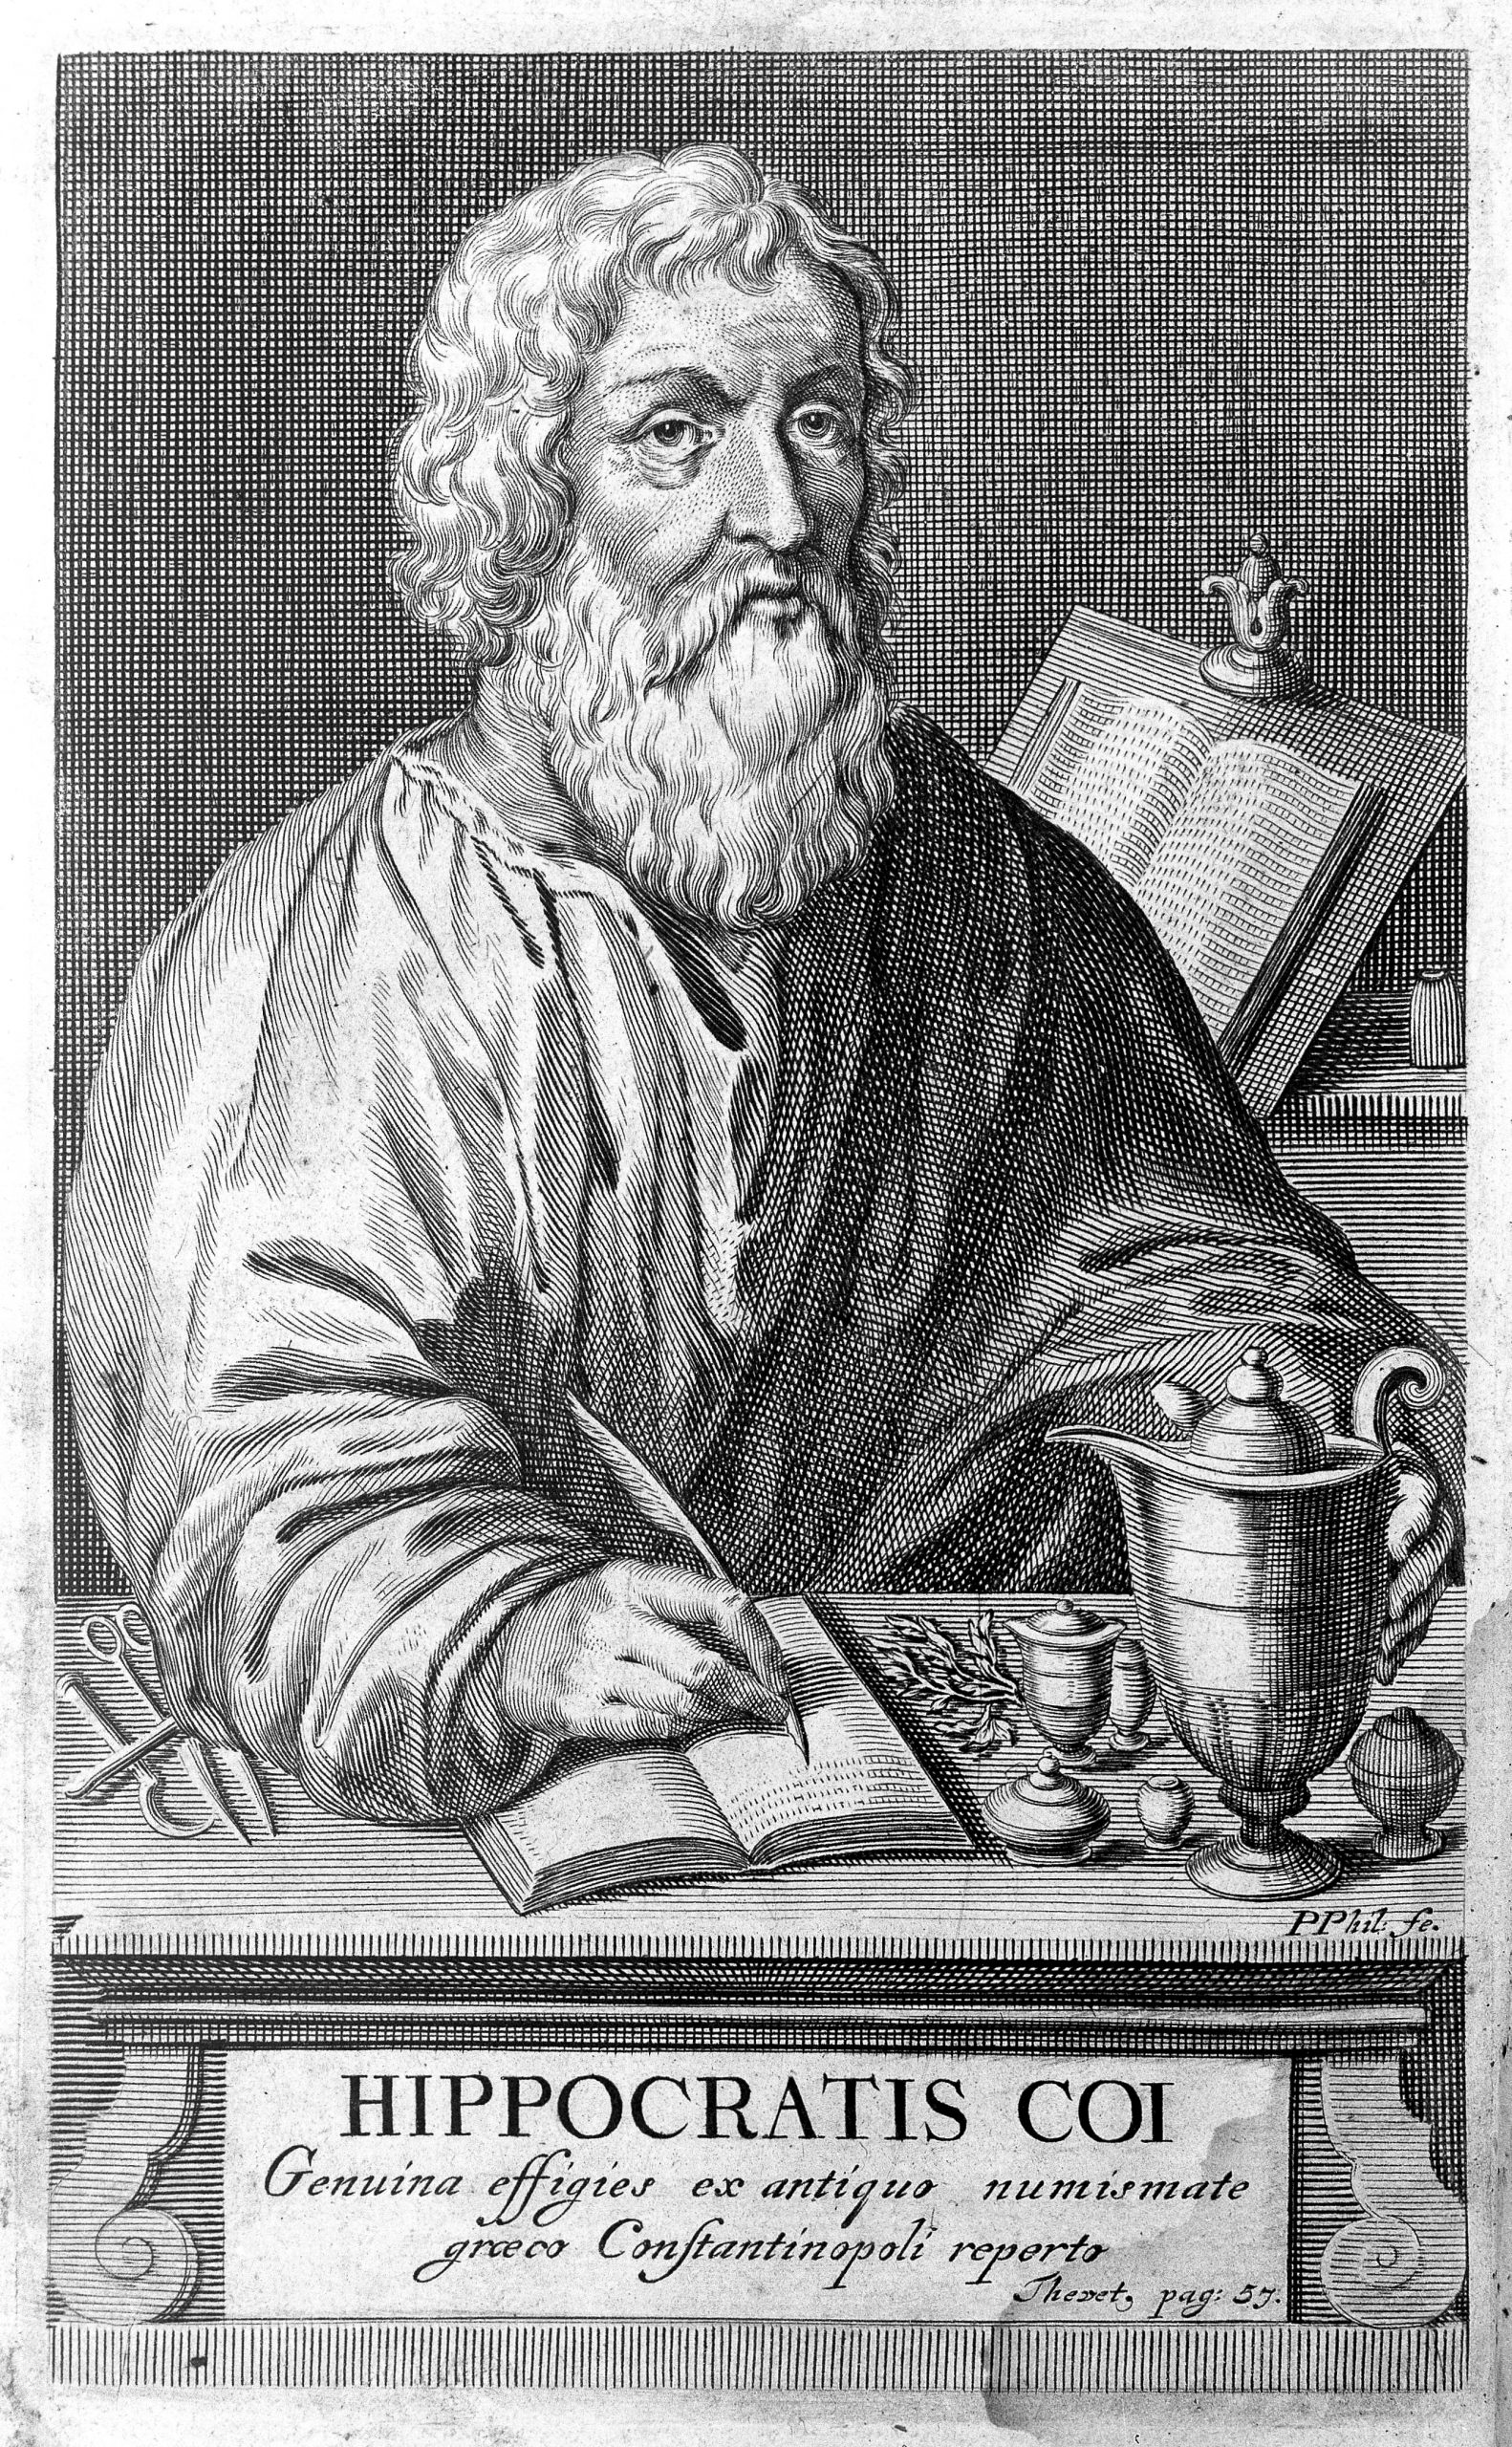 Pintura em preto e branco do filósofo Hipócrates. Ele tem barba e cabelos grandes, usa uma túnica e escreve em um caderno que está na mesa à sua frente.